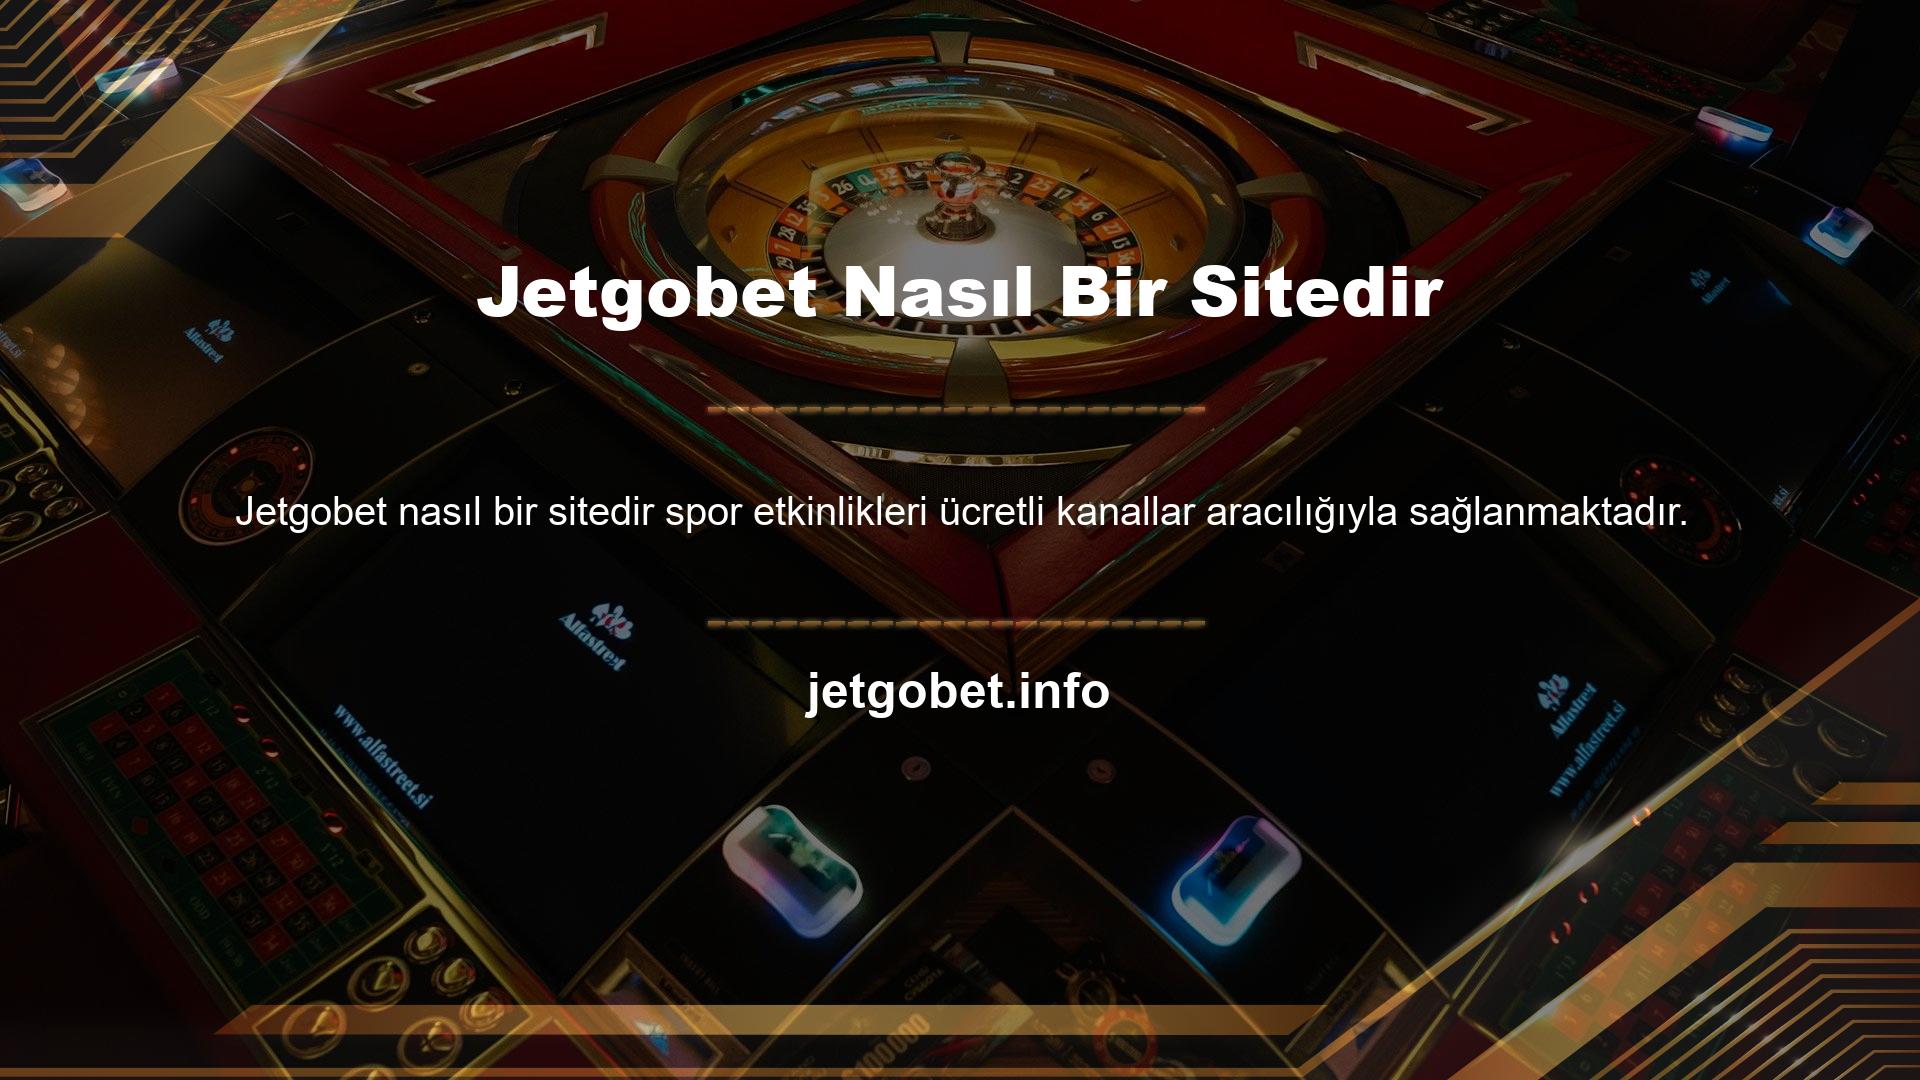 Peki üyelerin ücretsiz olarak HD kalitede maç izleyebildiği Jetgobet nasıl bir sitedir? Tüm bahis sitelerinde TV kanalı hizmeti bulunmamaktadır